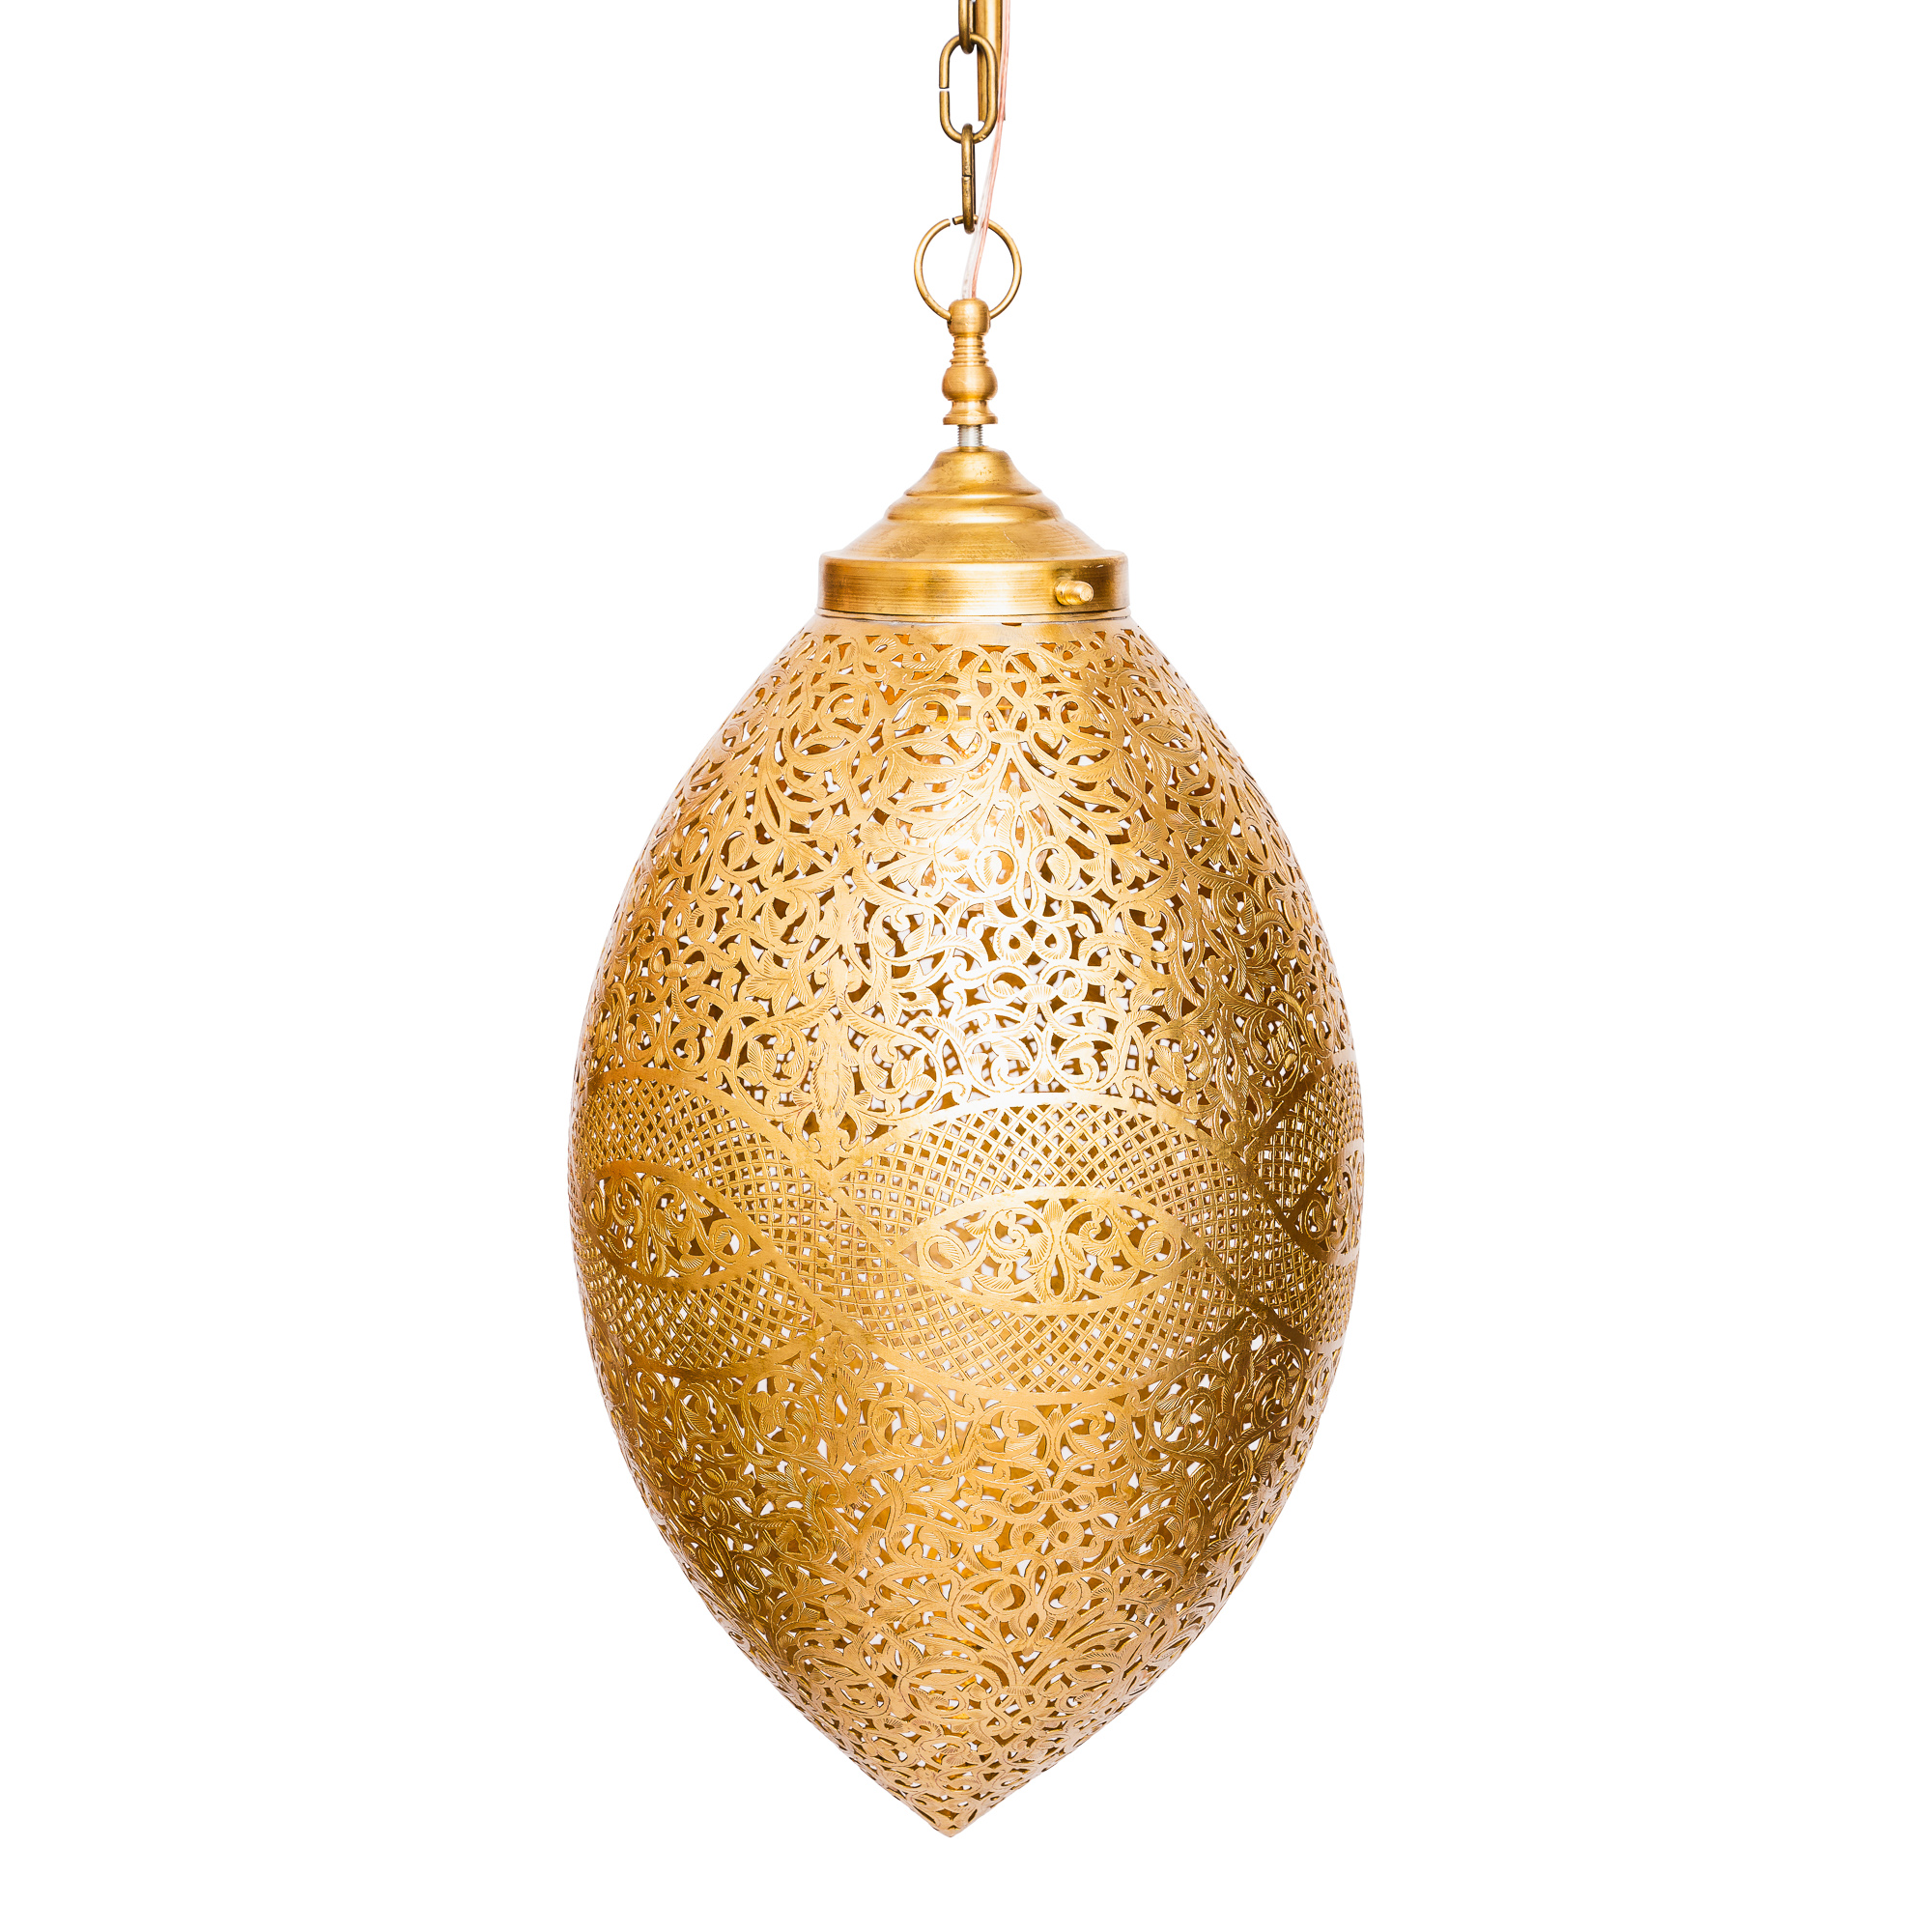 luxusni-mosazna-lampa-golden-egg